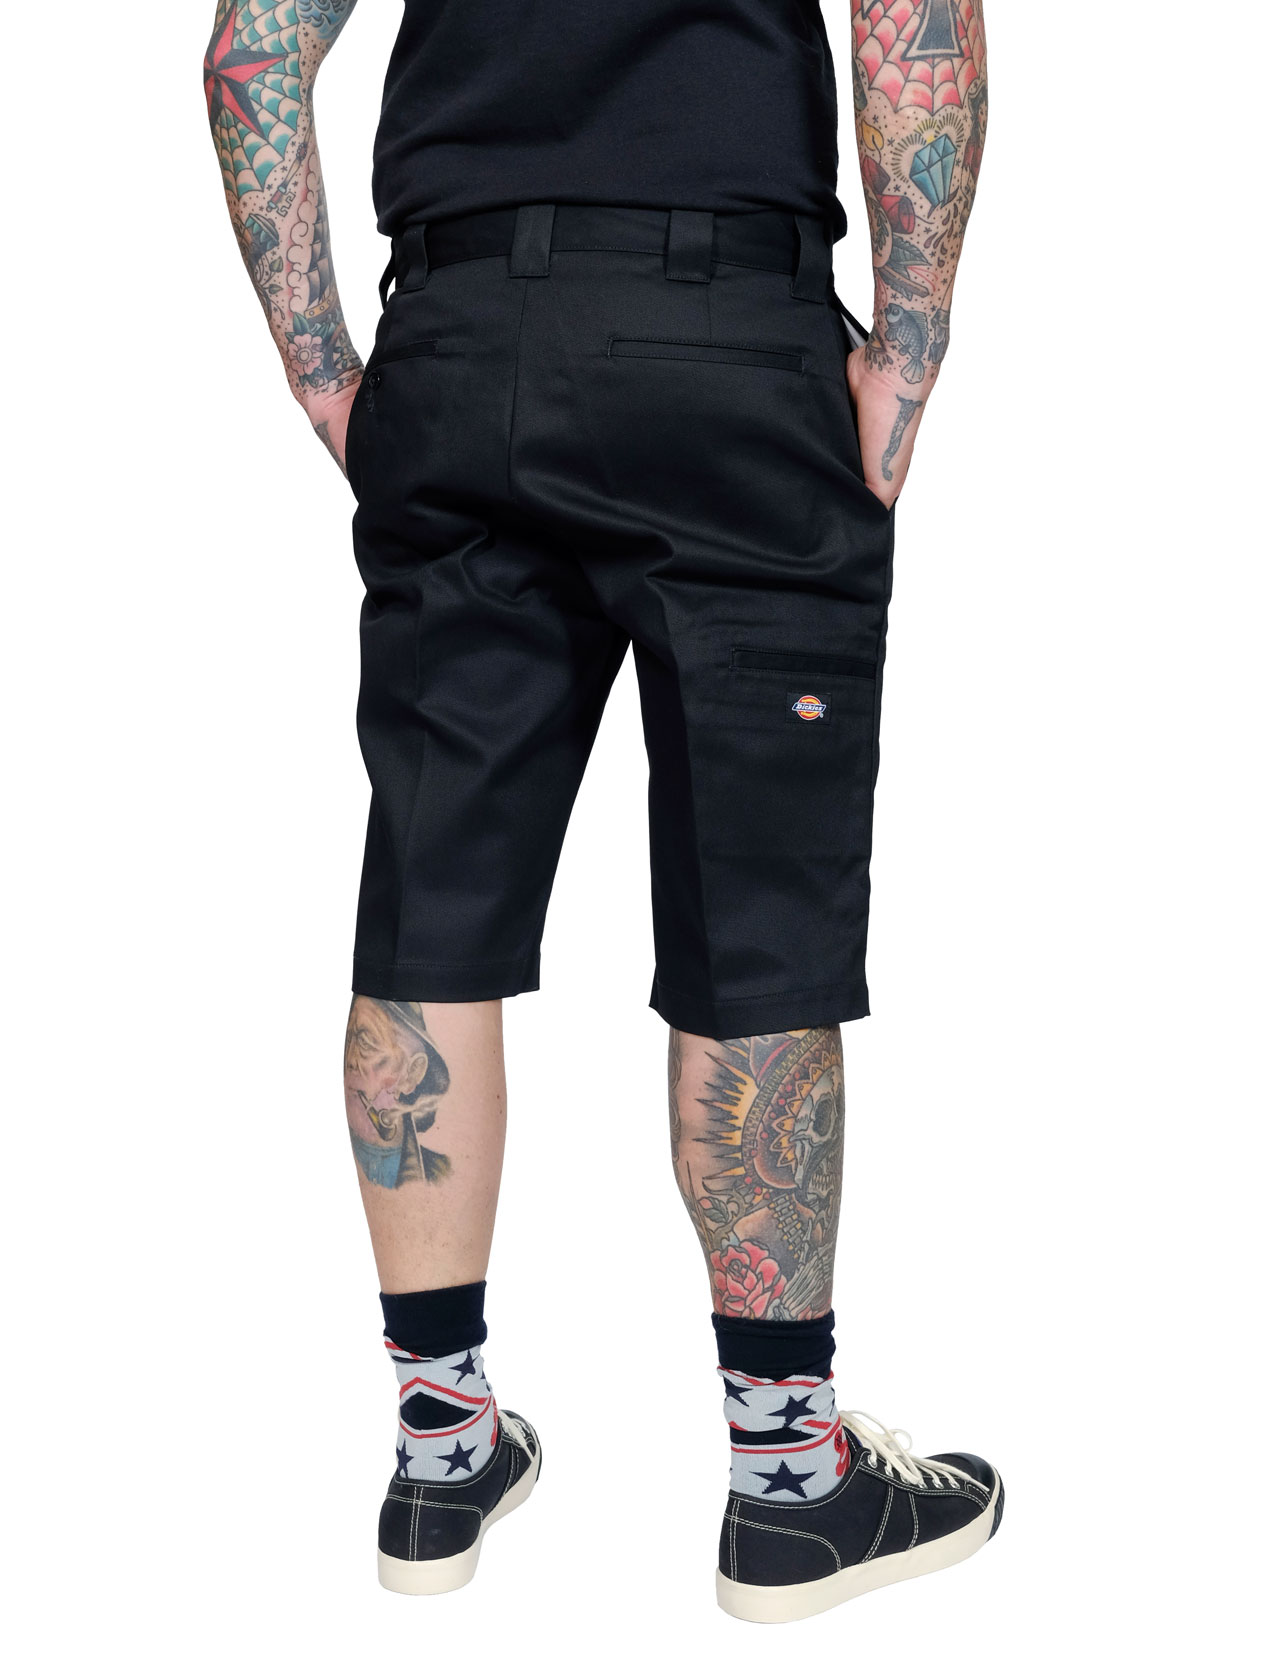 Dickies Pantalon//Pants//Shorts Pro Short Black Black